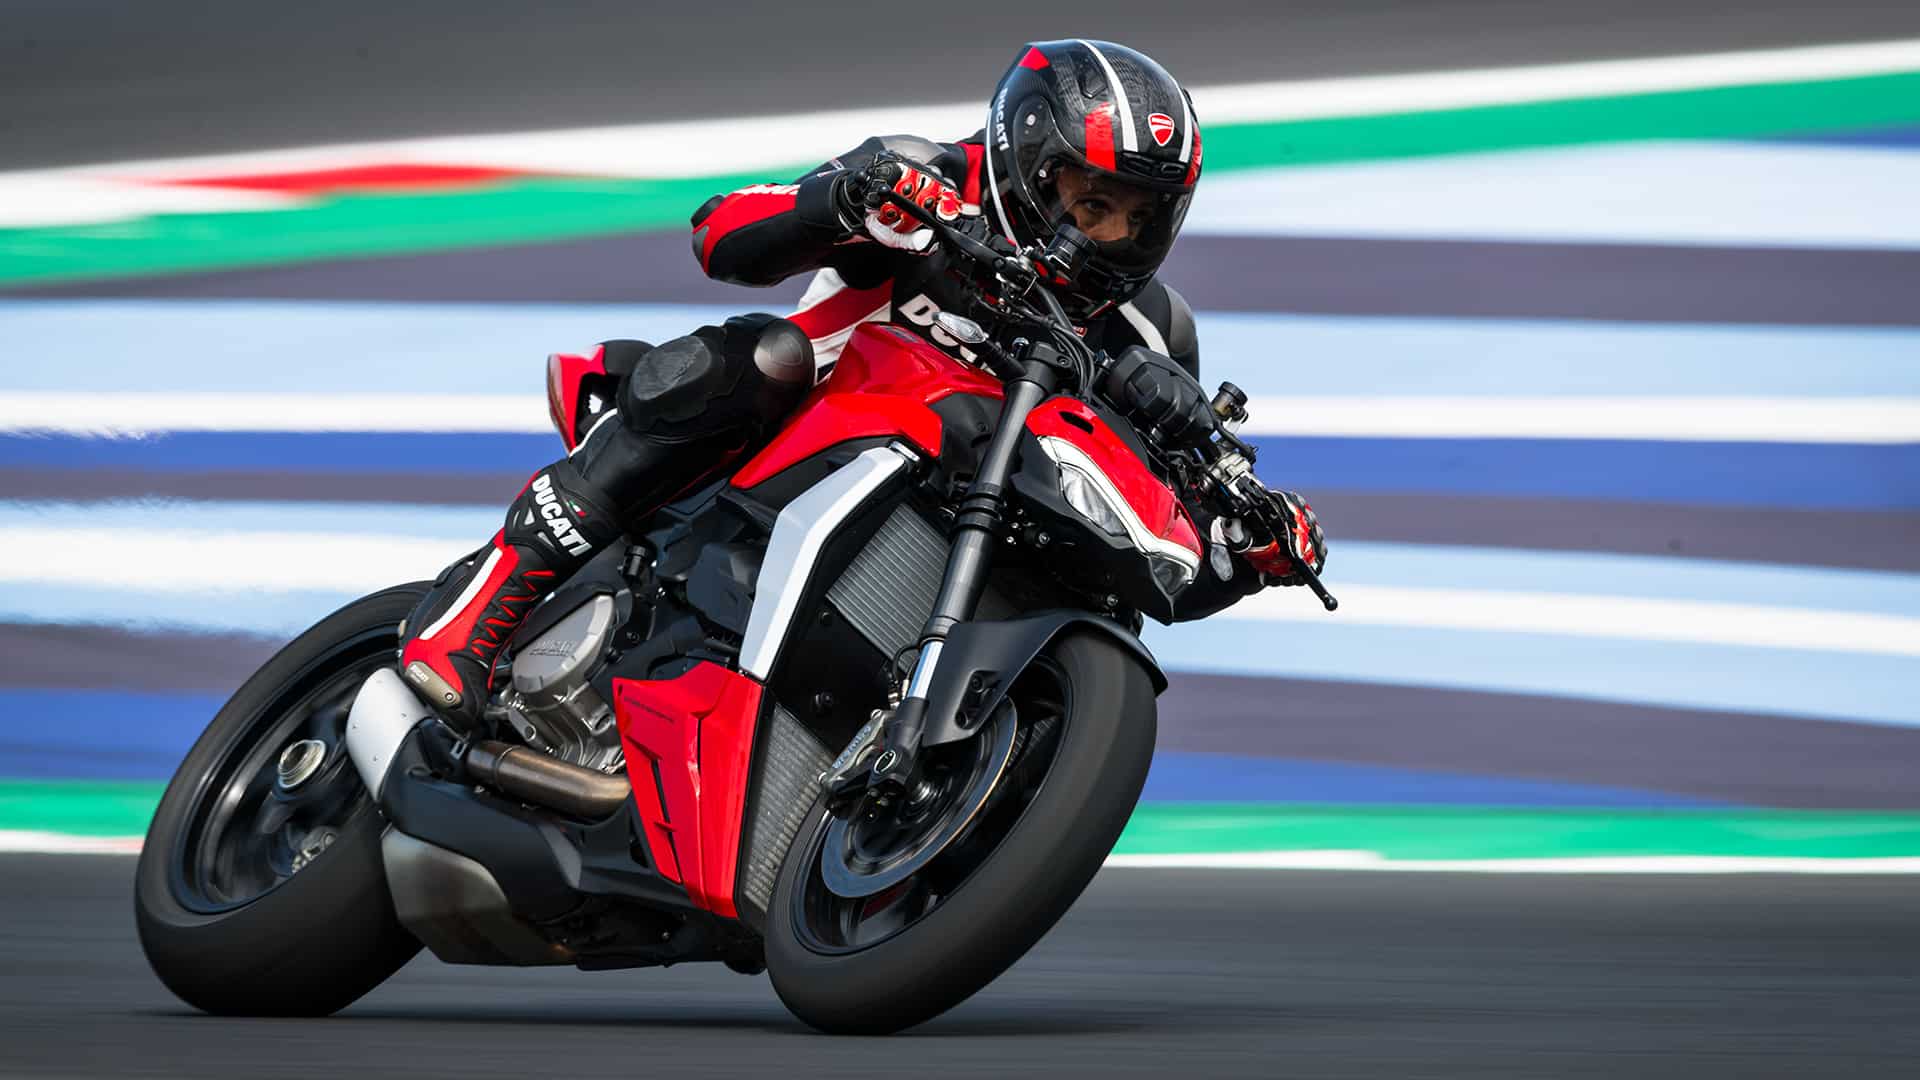 Ducati Streetfighter V2: Price